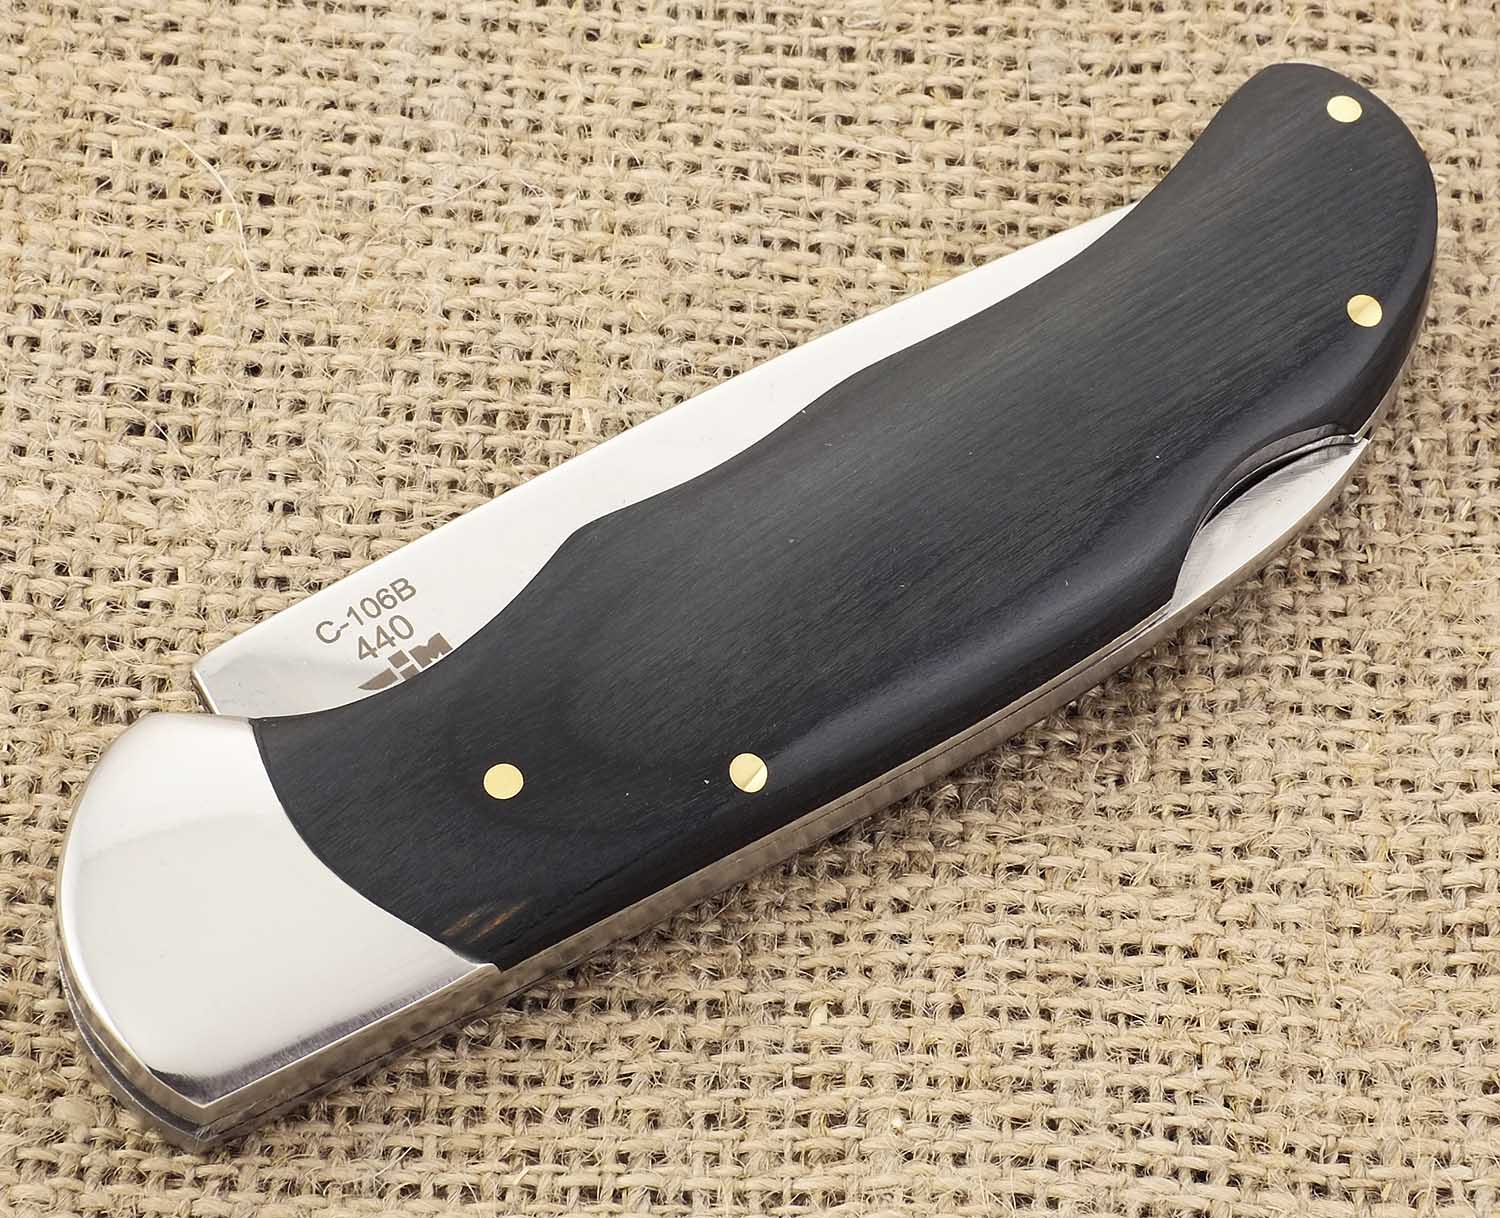 Нож складной зеркальная полировка деревянная рукоять Ножемир Чёткий расклад Лесник C-106B